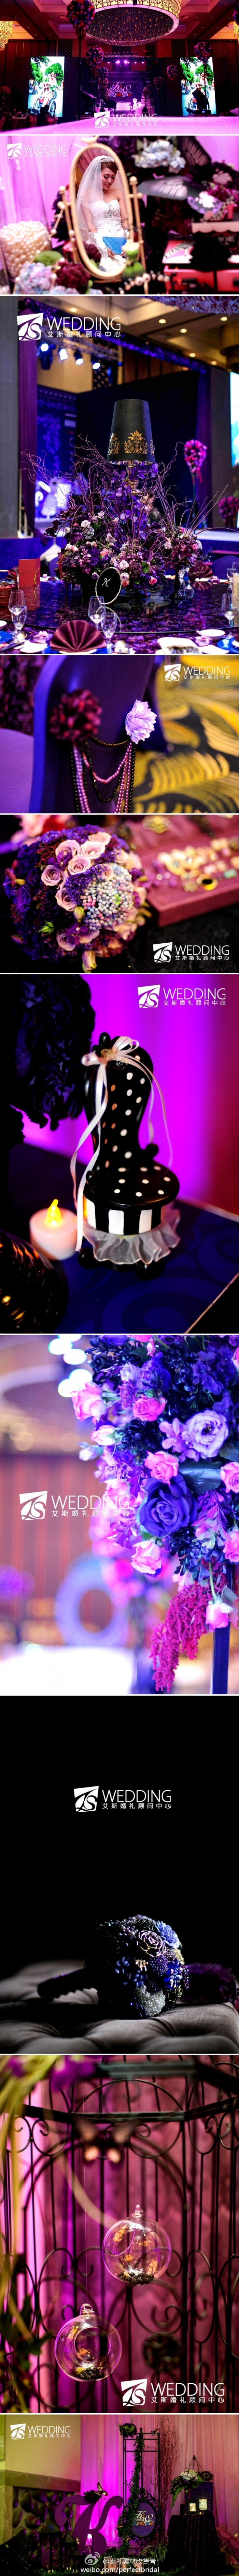 Anna Sui 的衣橱 本场婚礼多得新人的信任与支持 策划师延续了这个品牌色调大胆的风格 在婚礼上尝试了罕有出现的黑色元素 在灯光的渲染下 神秘的黑色与优雅的紫色的相搭配让人感觉到一种抢眼的 近乎妖艳的色彩震撼